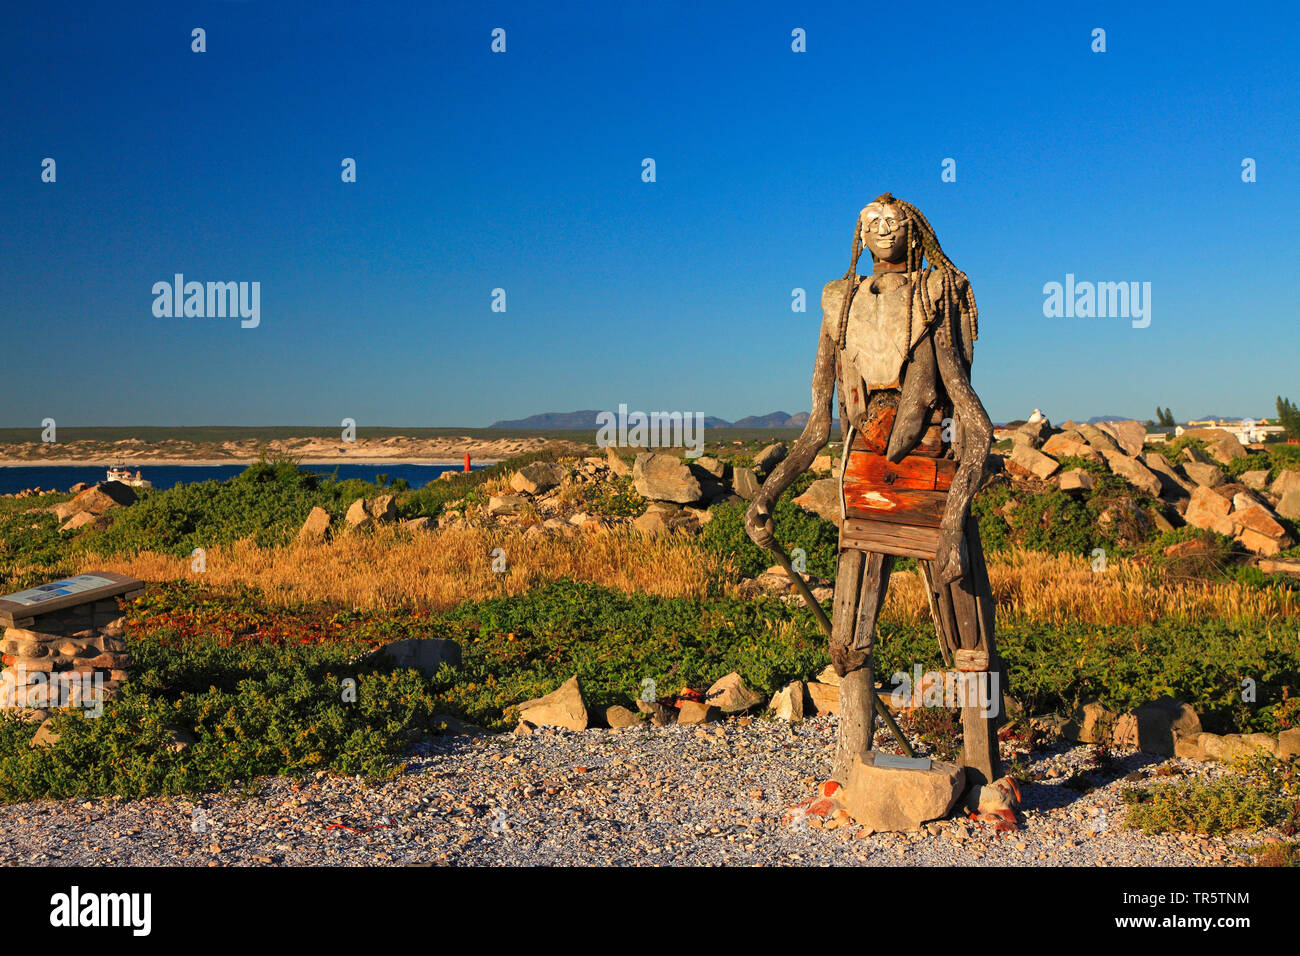 La figure humaine faite d'Ebenezer, Afrique du Sud, Western Cape, Lamberts Bay Banque D'Images